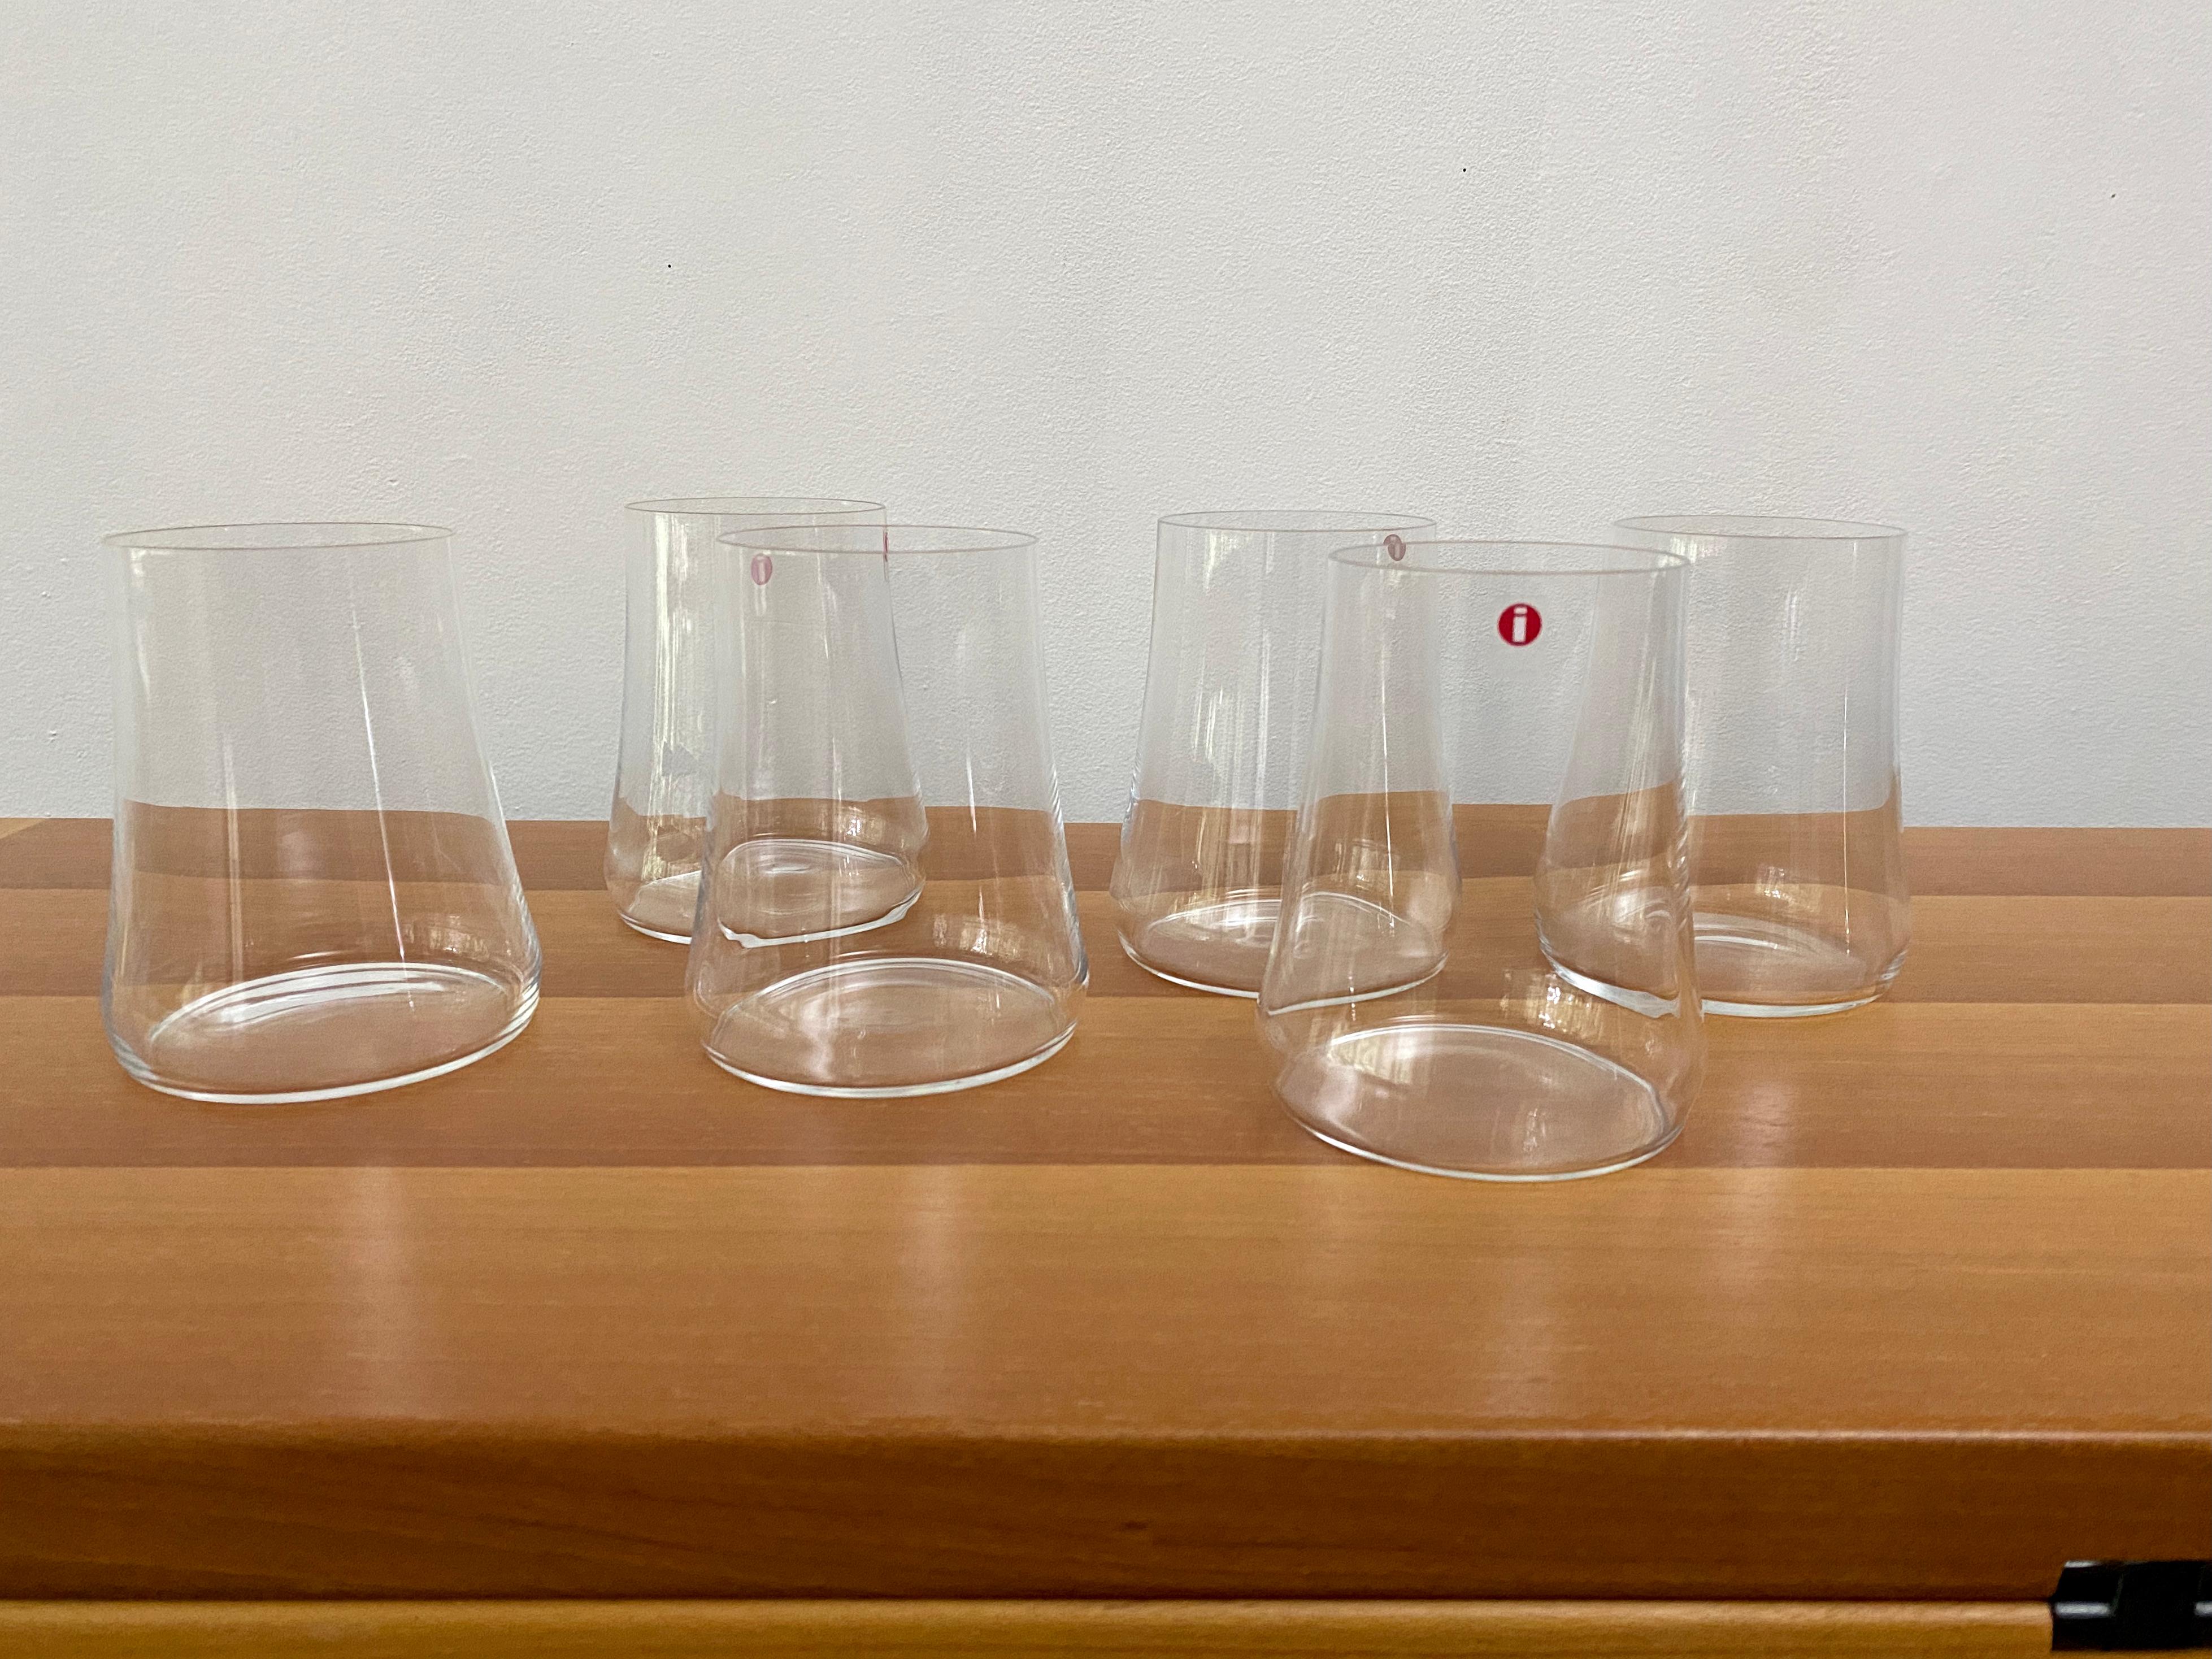 Six verres highball conçus par Marc Newson pour Iittala en 1998 et fabriqués en Finlande. Ces lunettes sont rares et ne sont plus produites depuis un certain temps. Extrait du site Web de Marc Newson : 